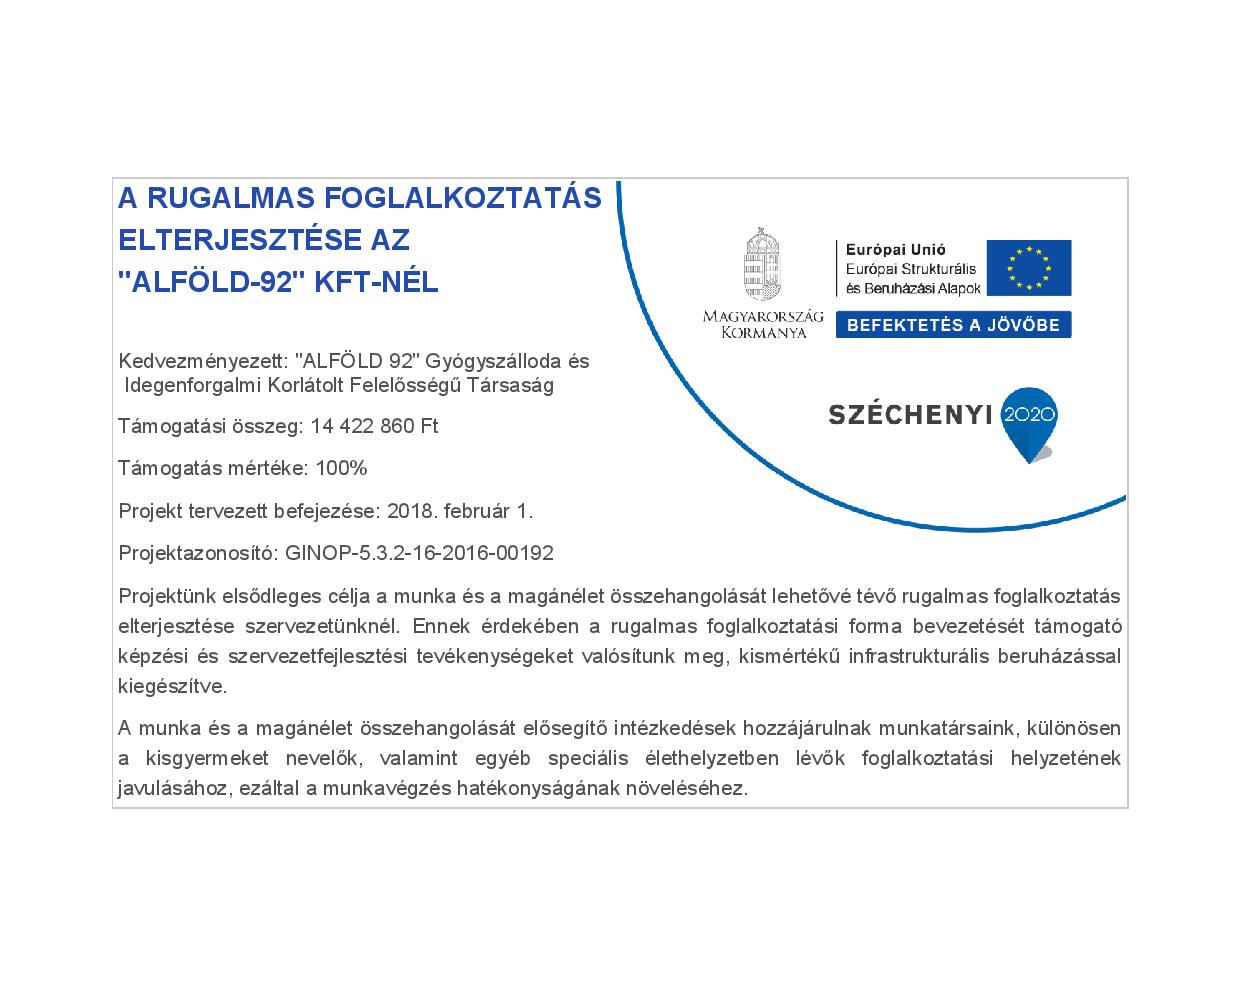 Széchenyi 2020 pályázat A rugalmas foglalkoztatás elterjesztése